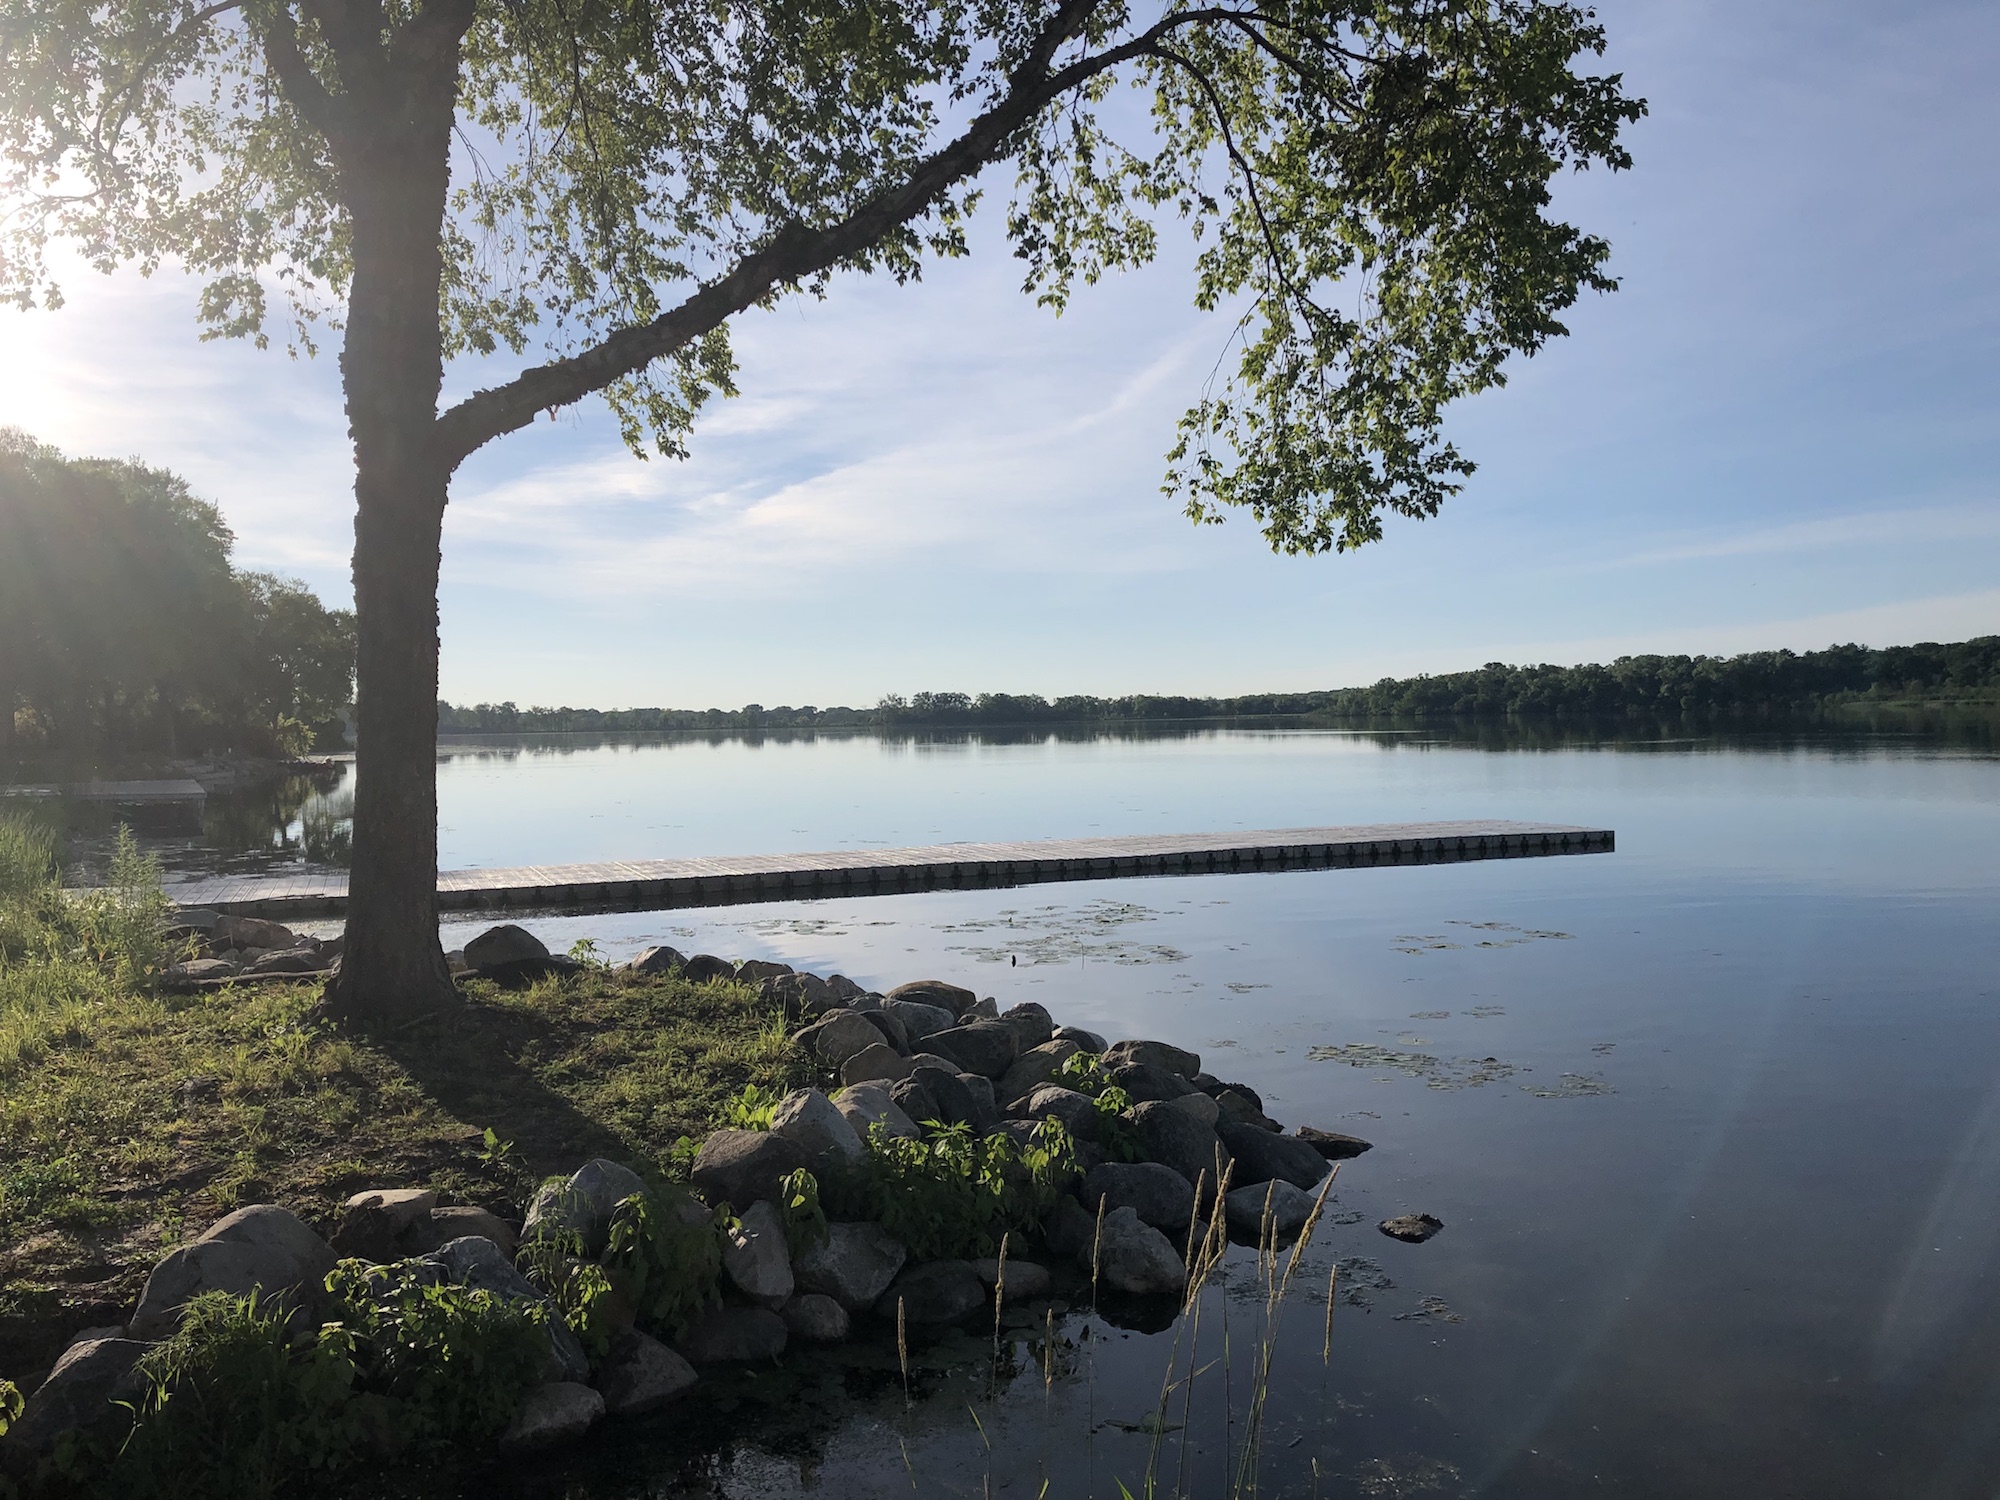 Lake Wingra on June 26, 2019.